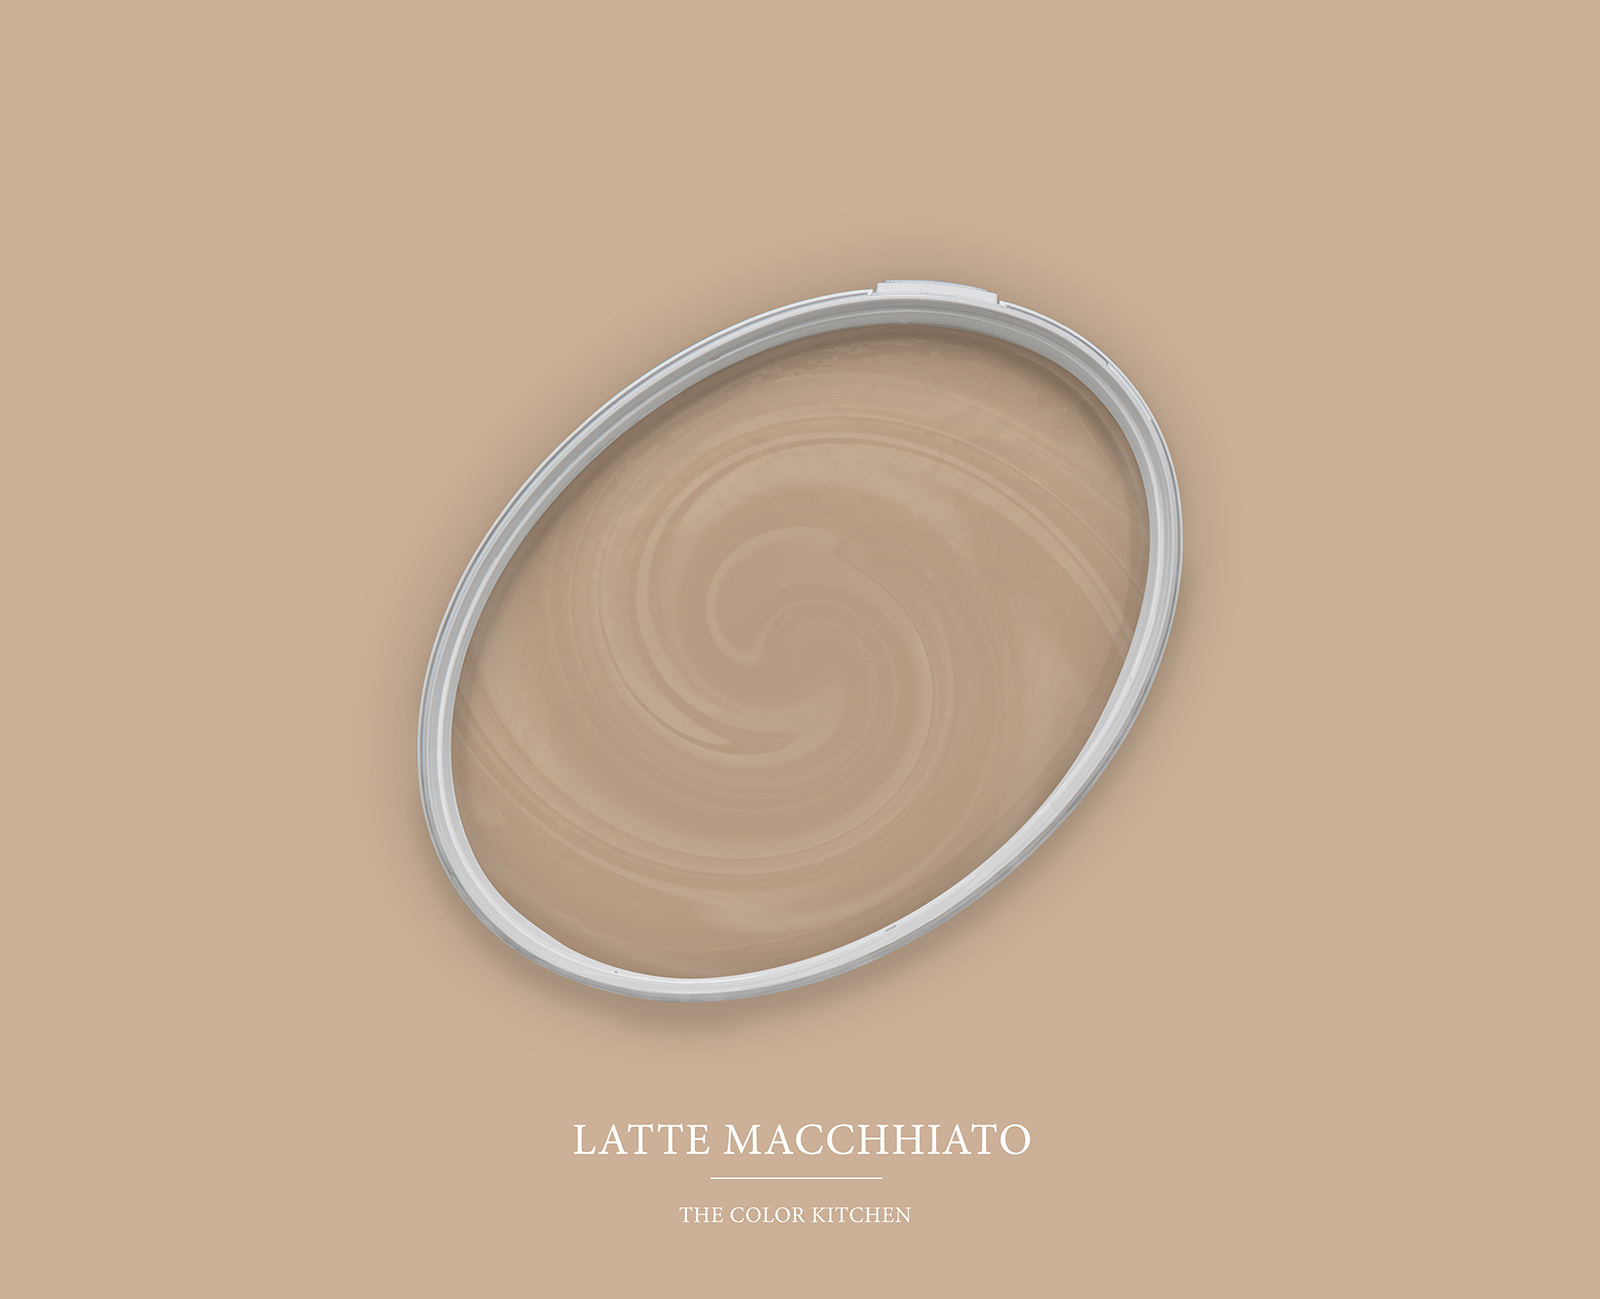 Muurverf TCK6010 »Latte Macchhiato« in natuurbeige – 5,0 liter
